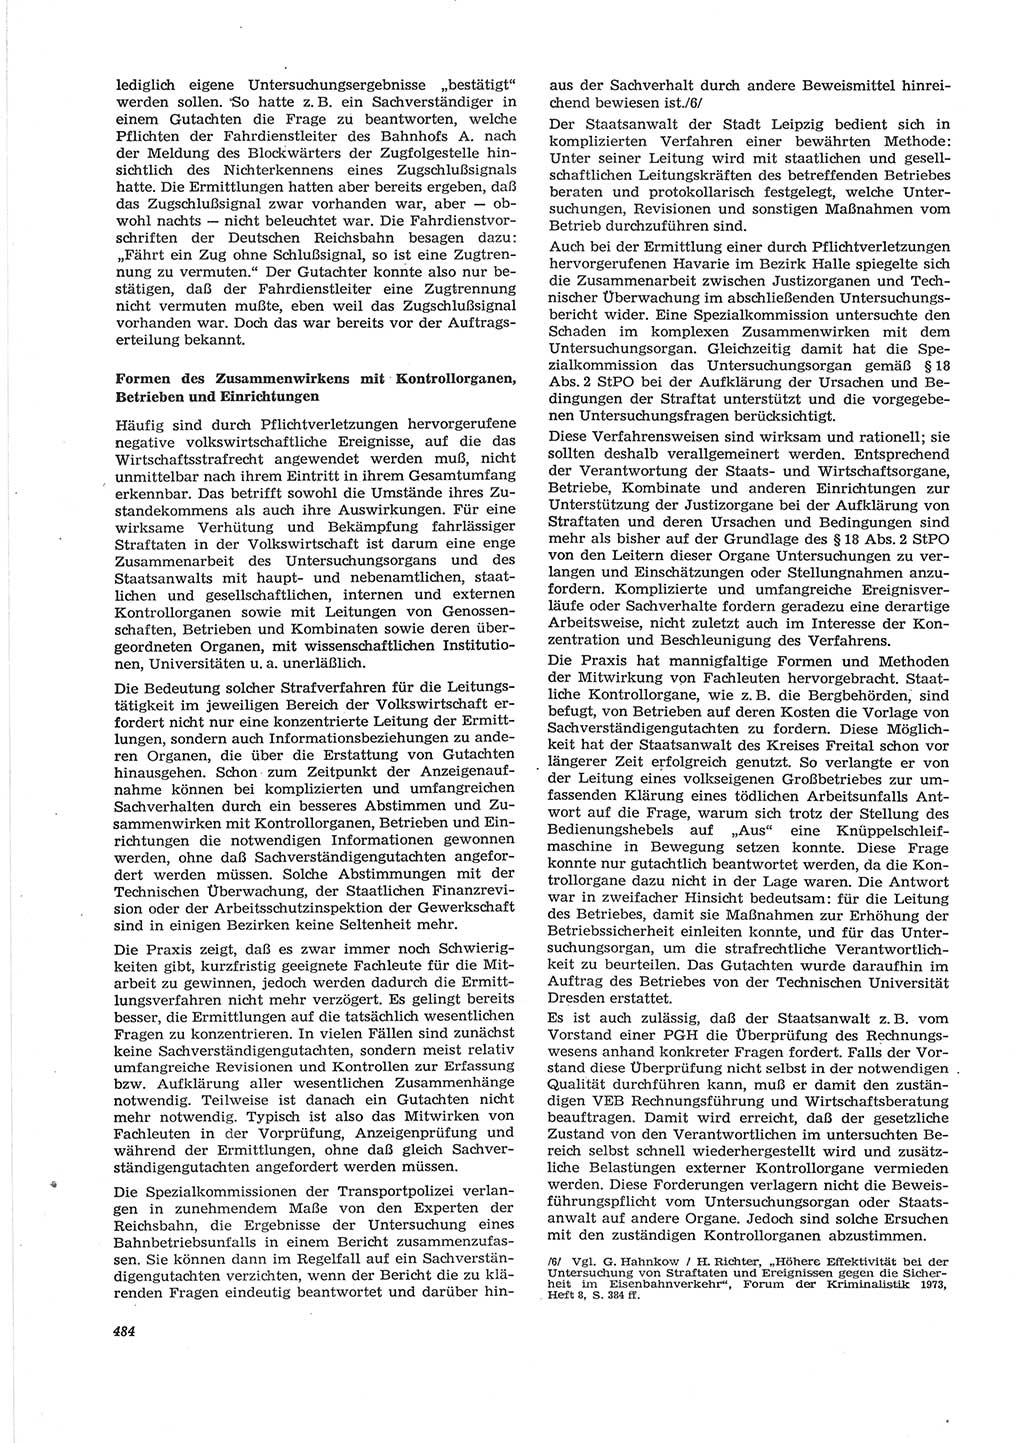 Neue Justiz (NJ), Zeitschrift für Recht und Rechtswissenschaft [Deutsche Demokratische Republik (DDR)], 28. Jahrgang 1974, Seite 484 (NJ DDR 1974, S. 484)